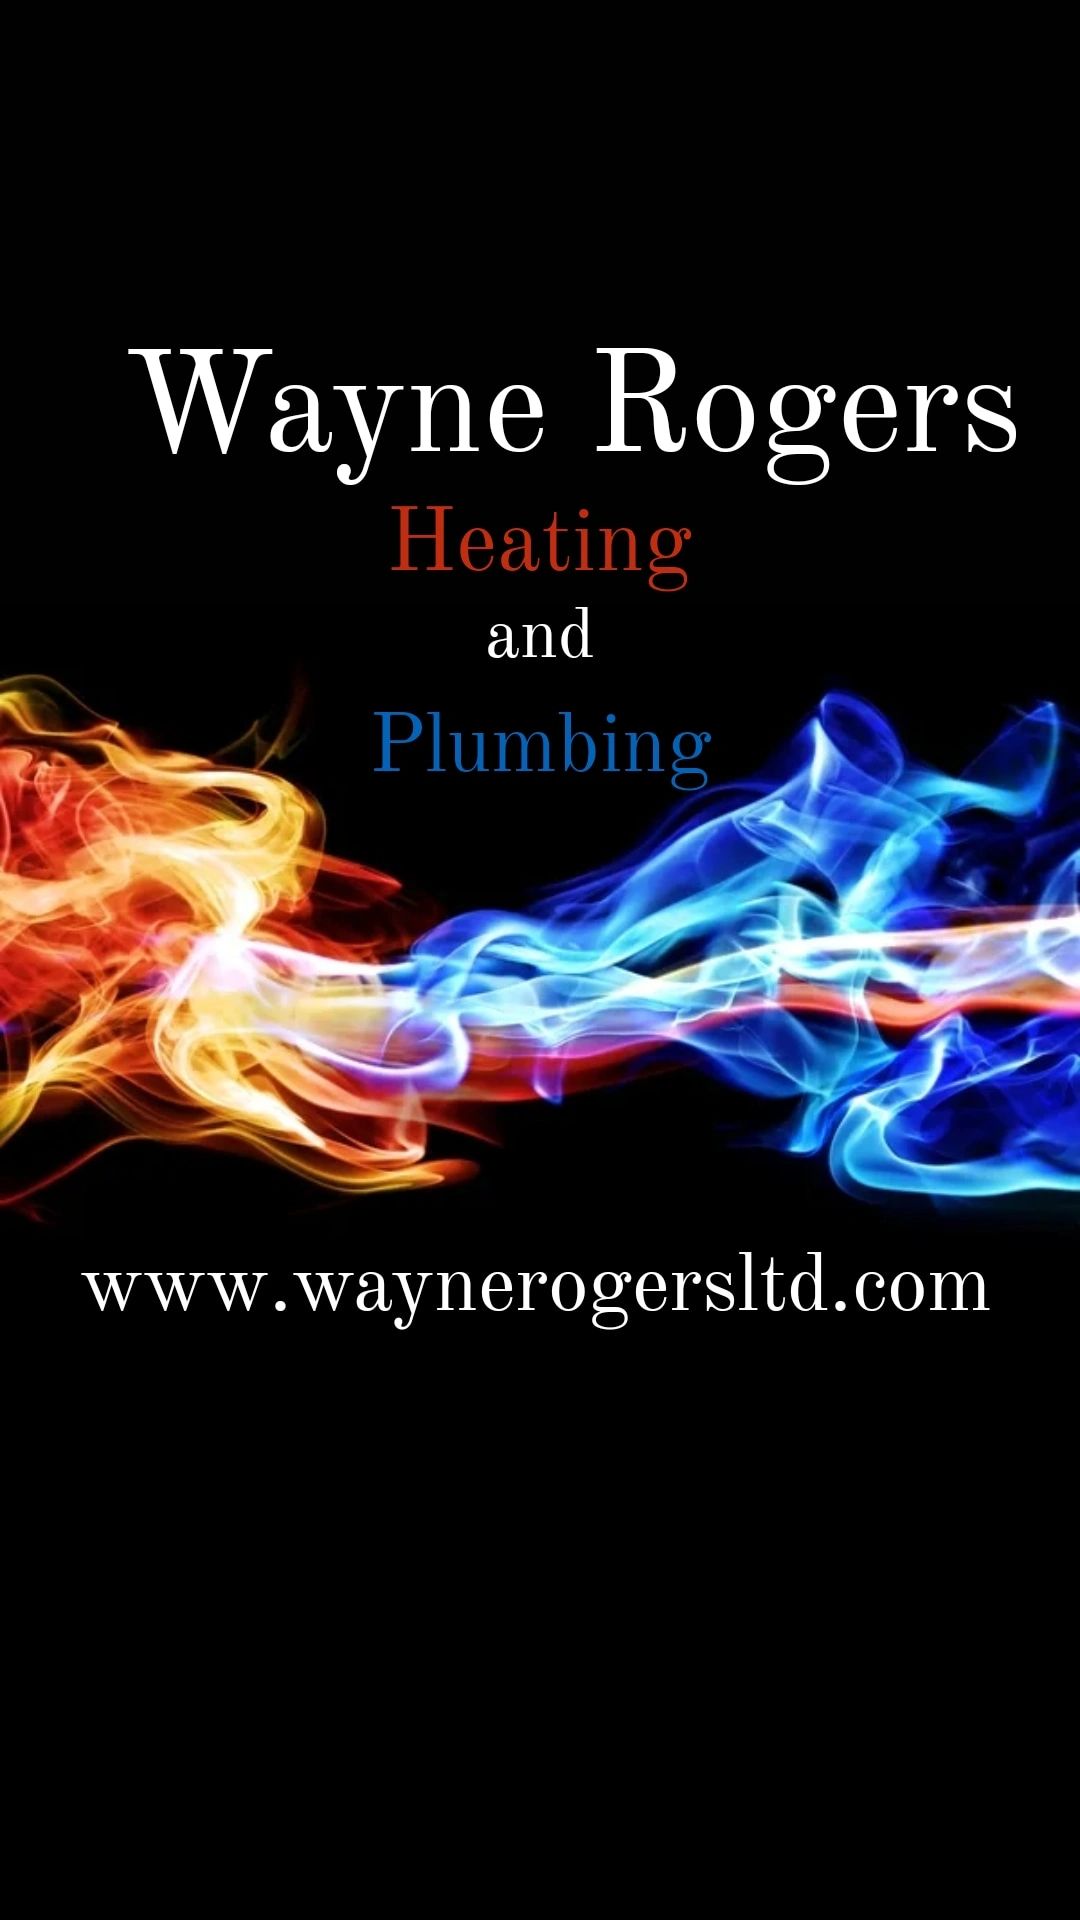 Wayne Rogers heating and plumbing logo